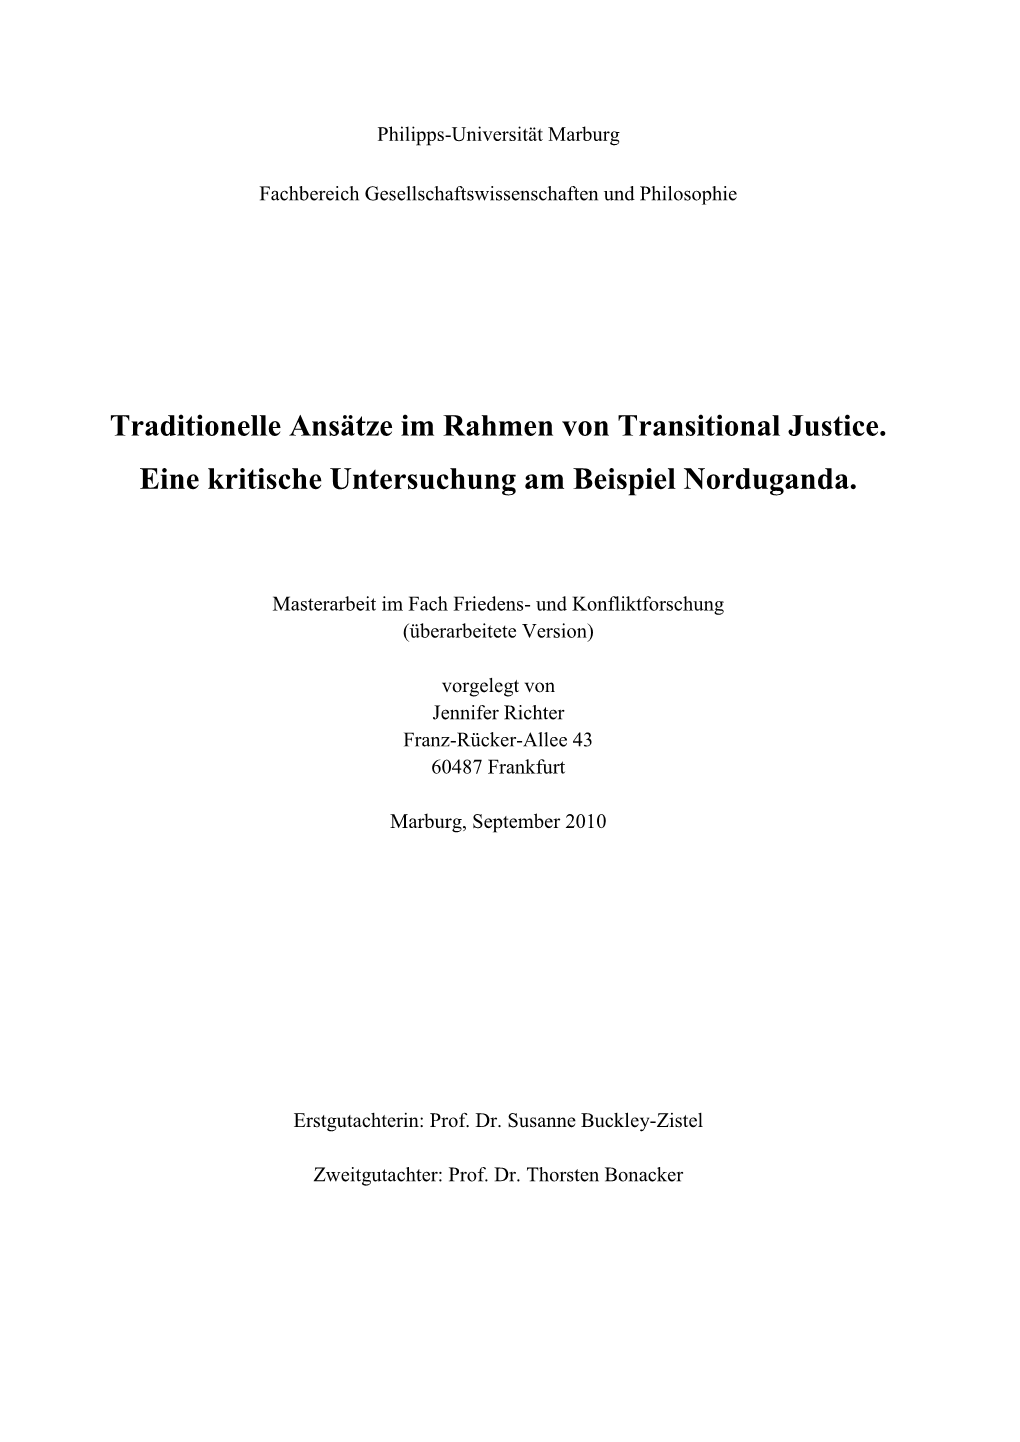 Traditionelle Ansätze Im Rahmen Von Transitional Justice. Eine Kritische Untersuchung Am Beispiel Norduganda